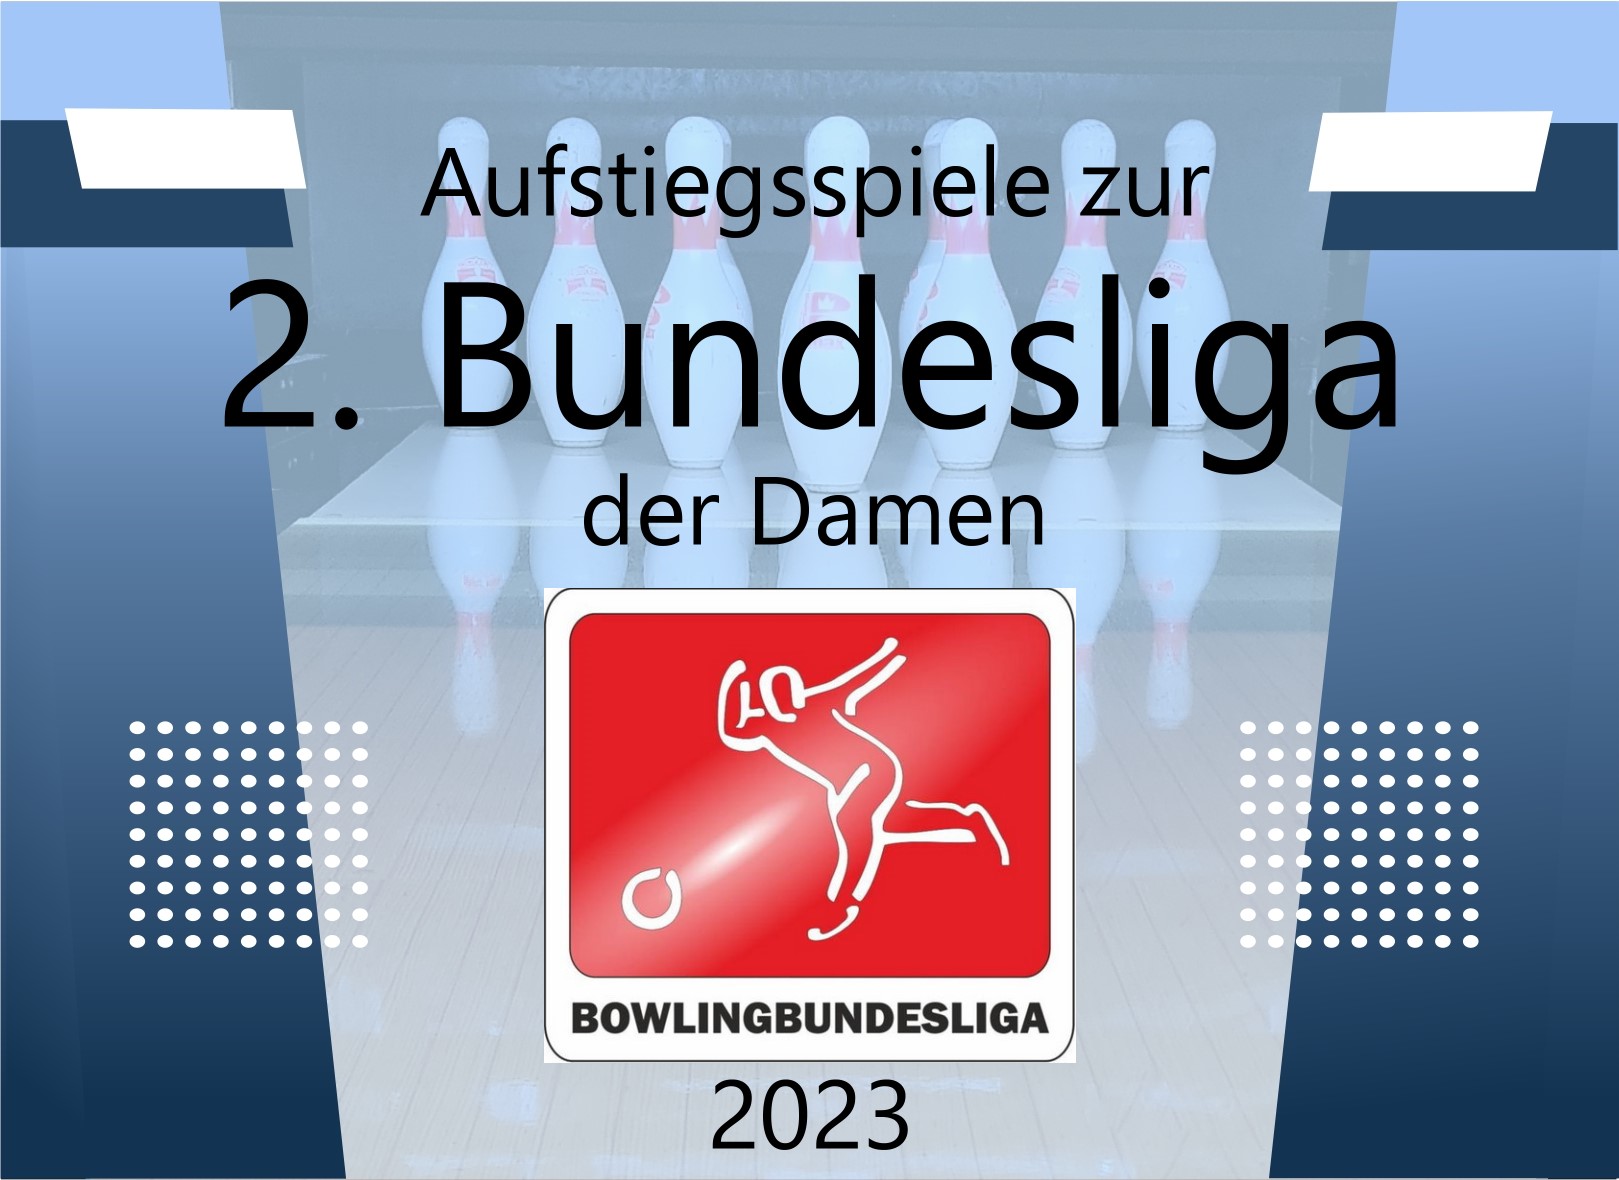 Aufstiegsspiele zur 2. Bundesliga der Damen